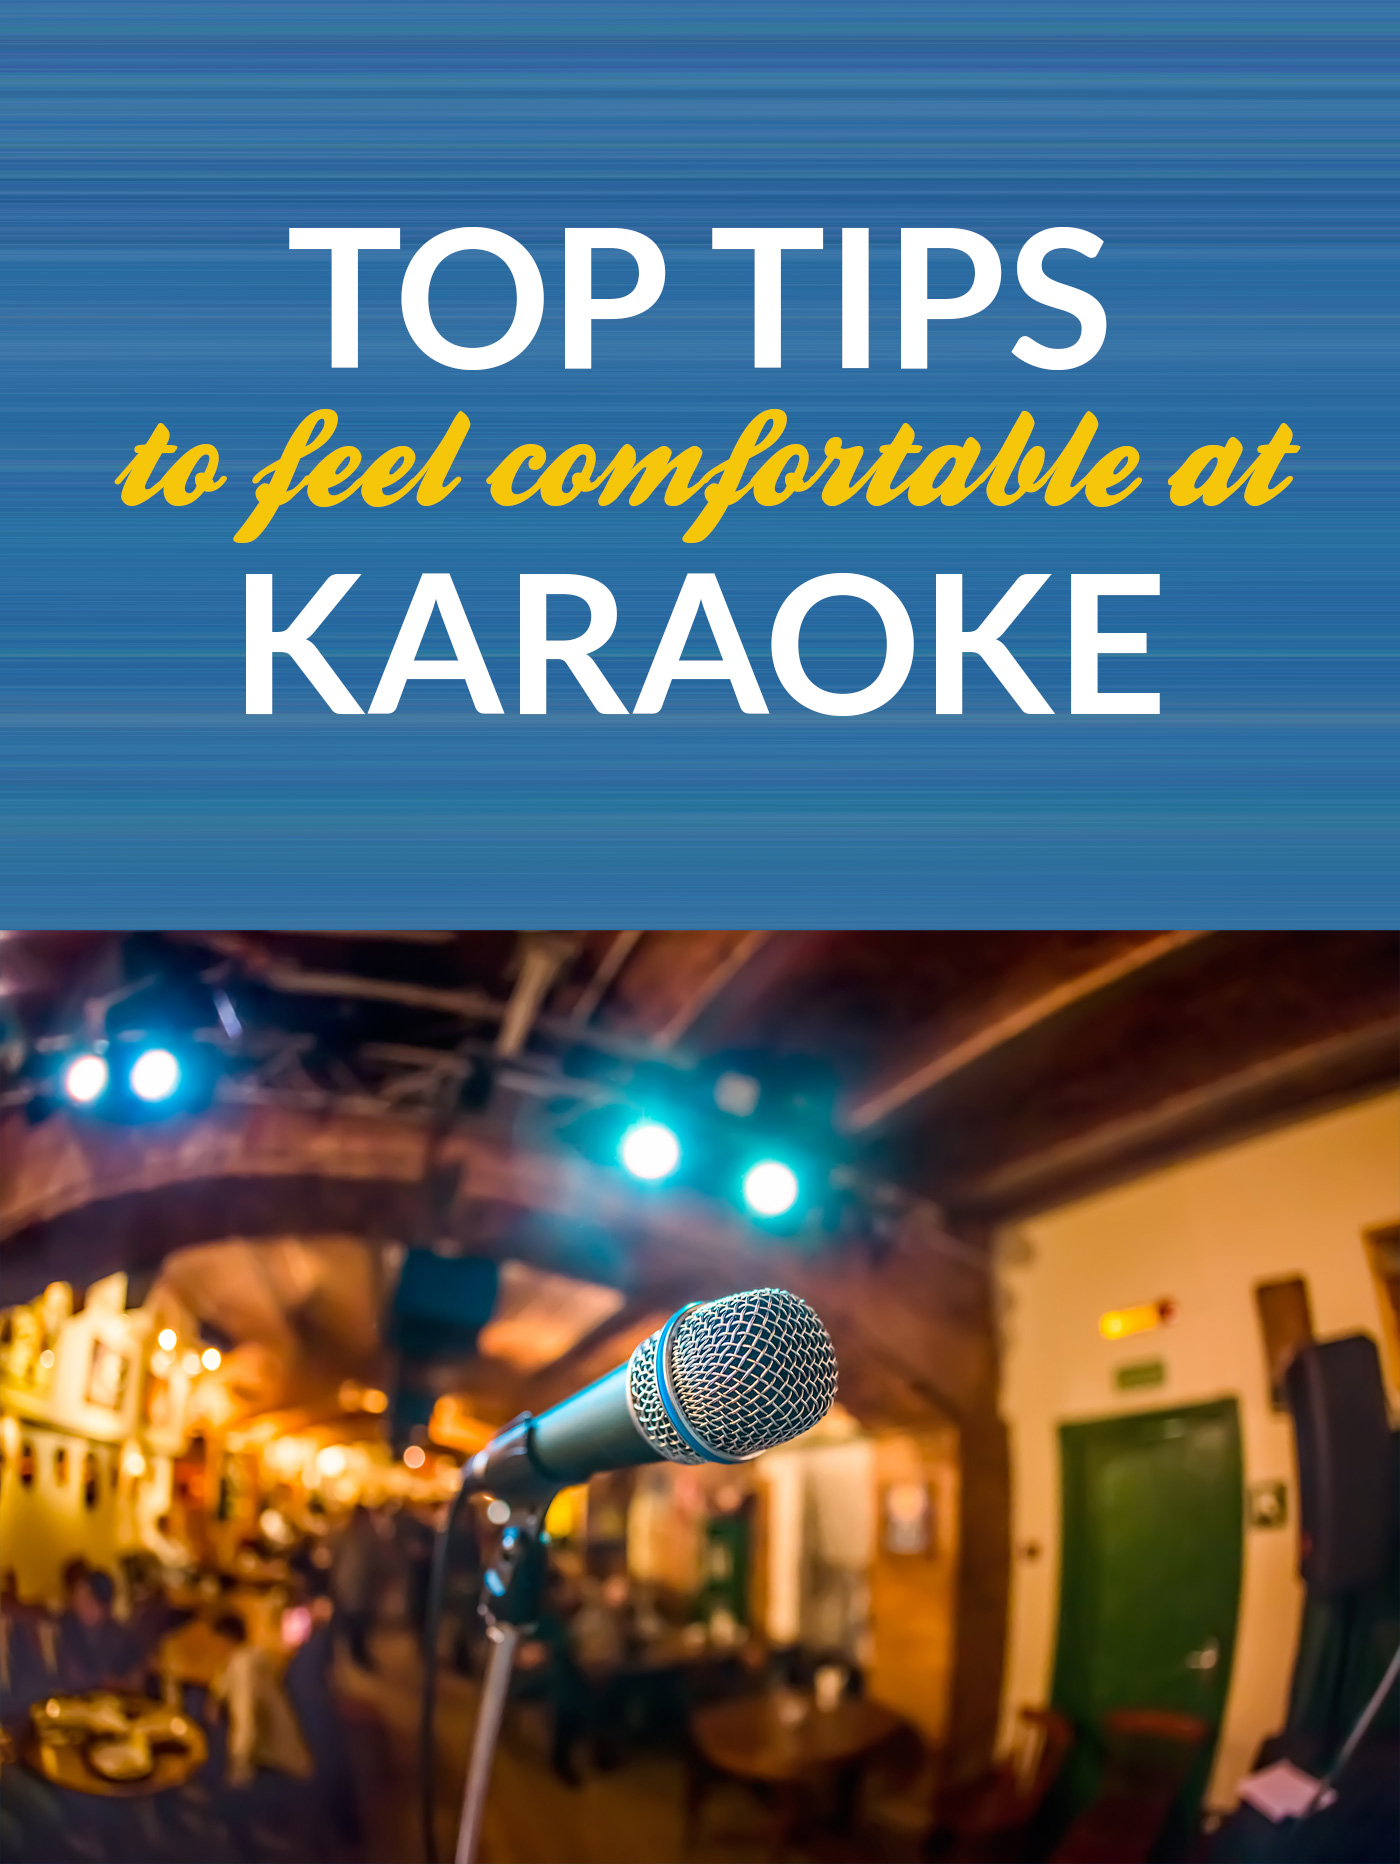 Karaoke Tips - Feel Comfortable Singing Your Heart Out #karaoke #singing #karaokeparty #karaokesongs